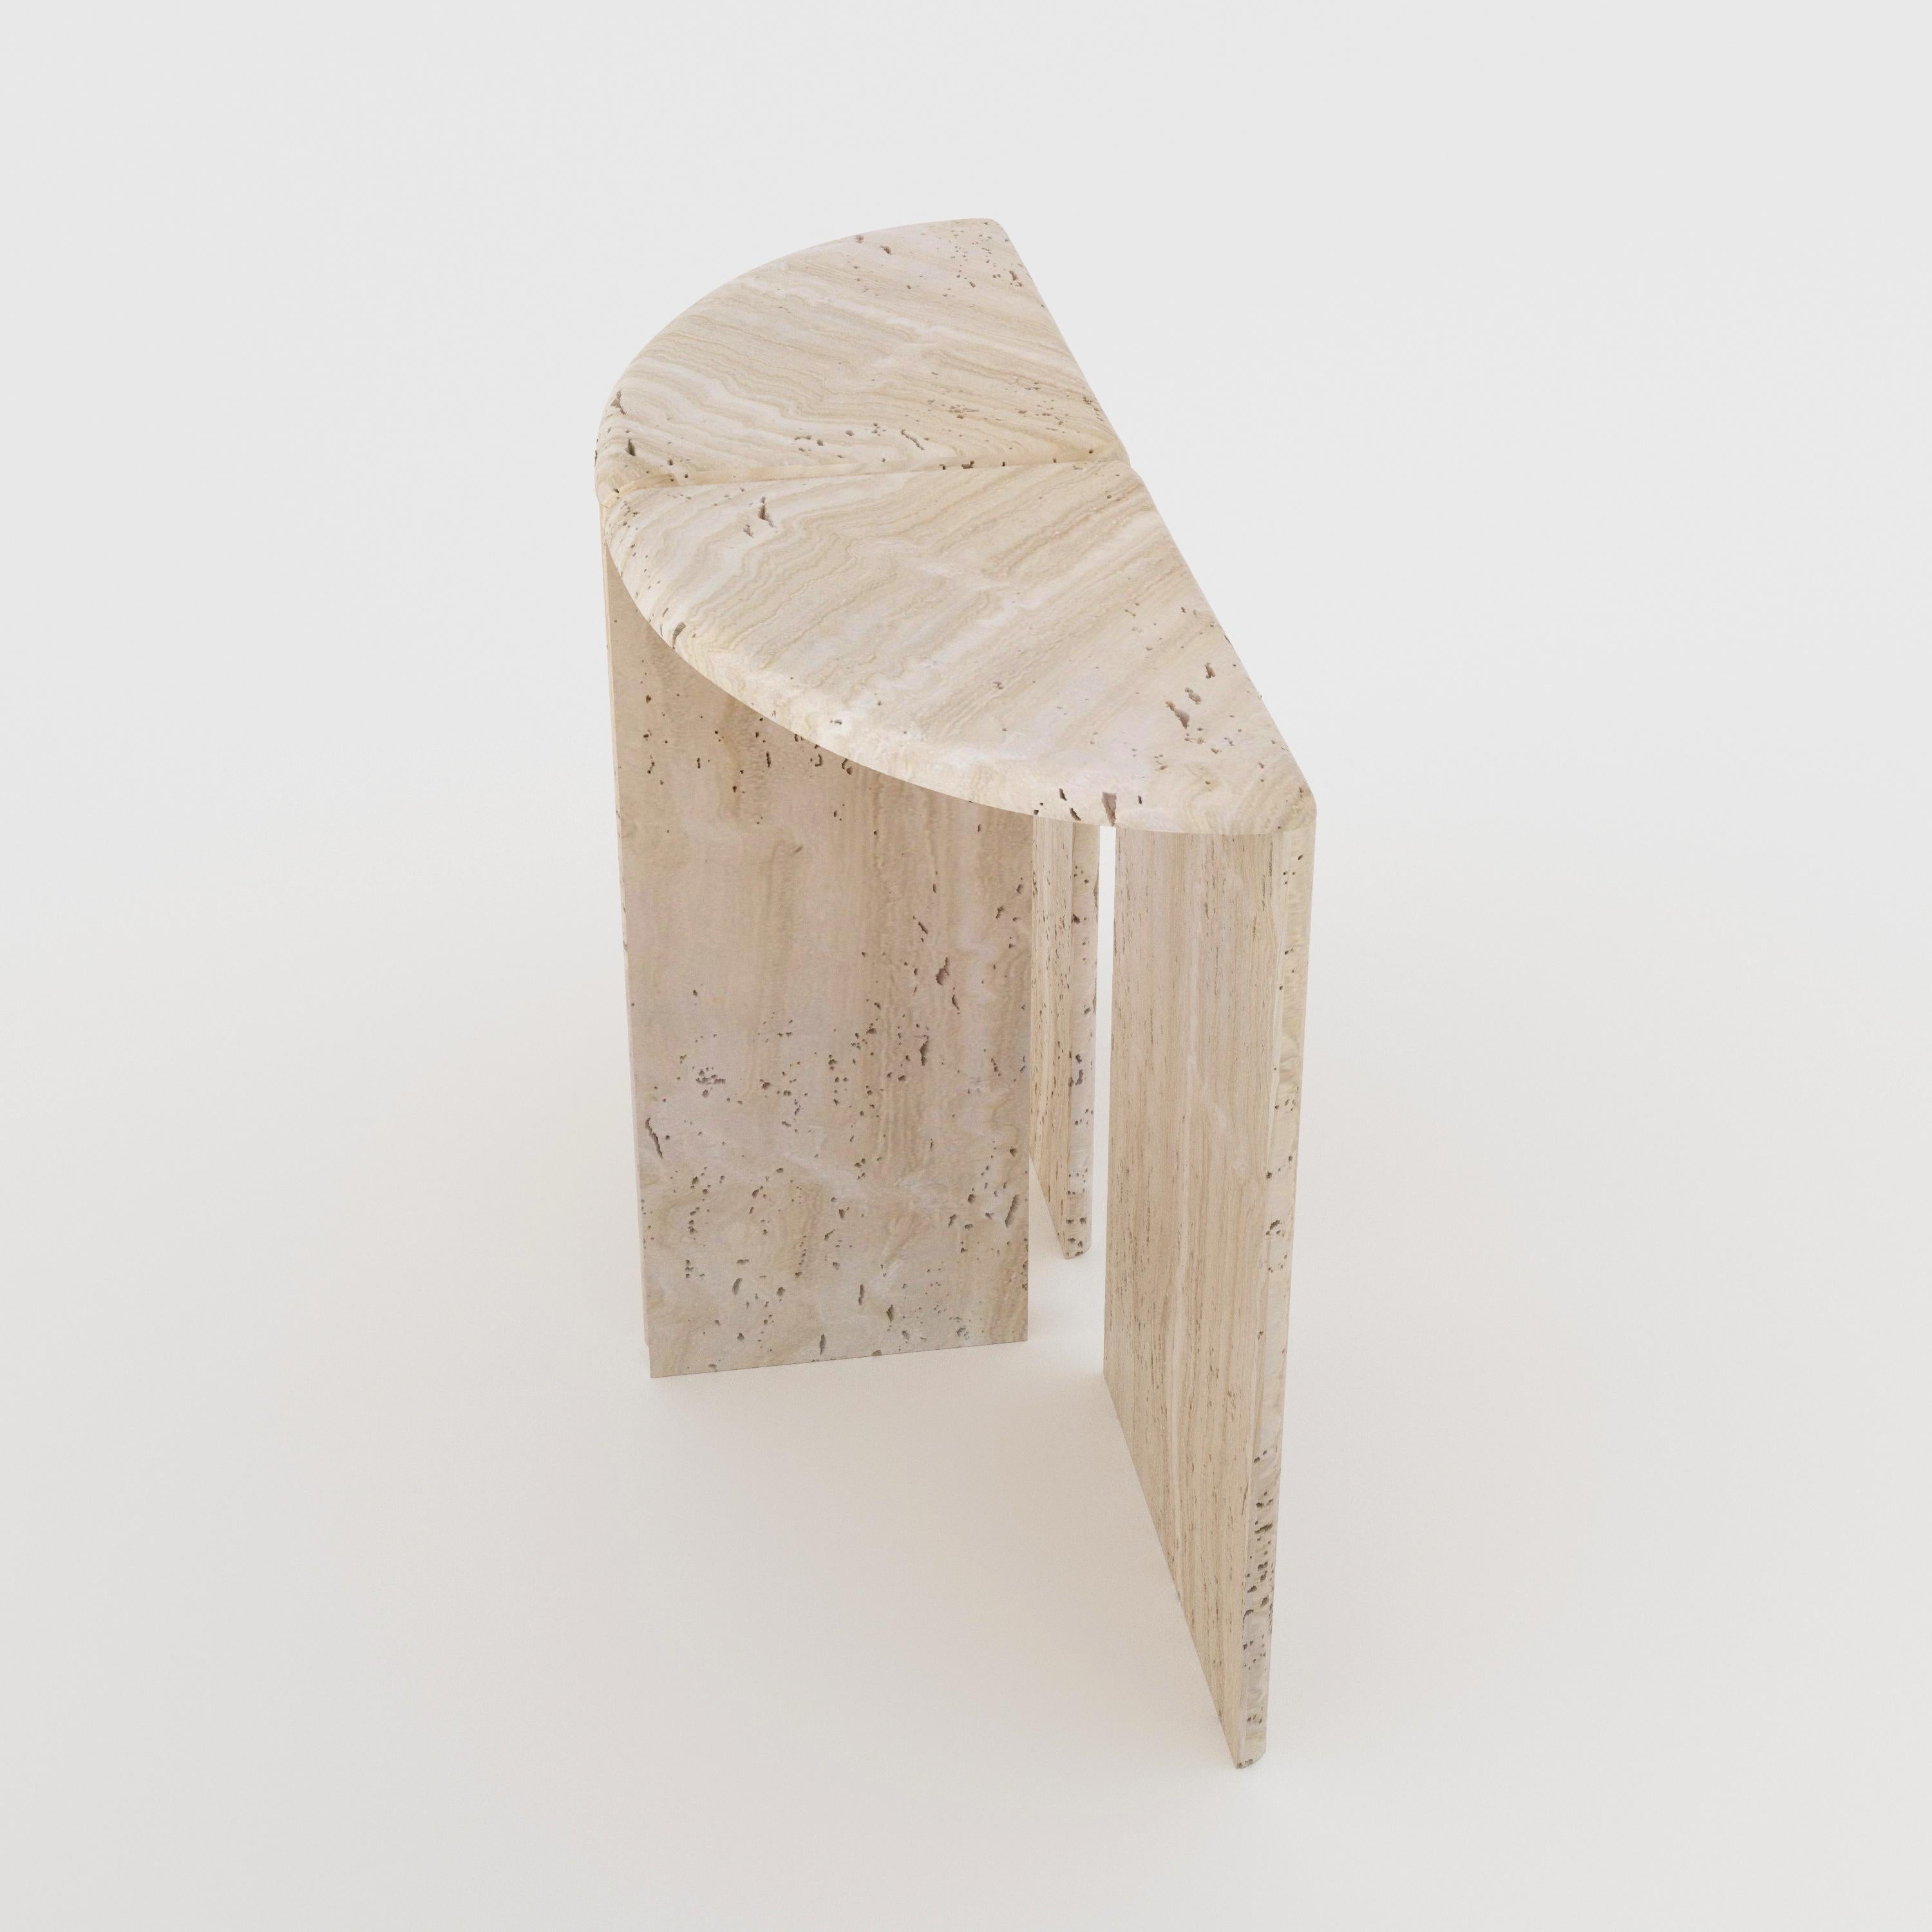 Ein Konsolentisch, handgefertigt aus 30 mm dickem, geschliffenem, ungefülltem Navona Travertin. Inspiriert von riesigen Seerosenblättern und ihren gewellten Rändern, ist es in zwei Hälften geteilt, wobei die abgerundeten Kanten jedes Teils den